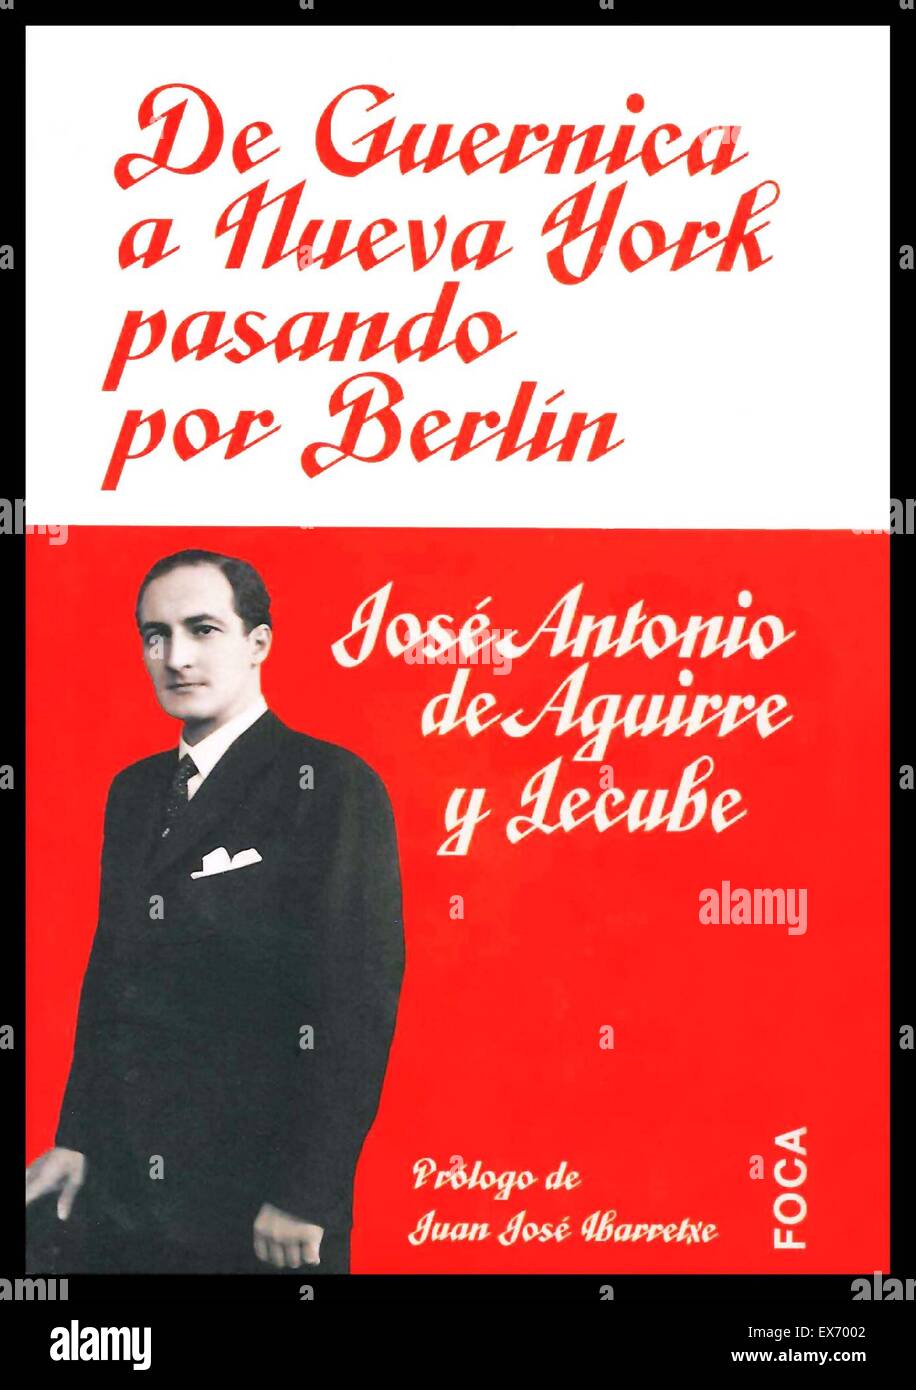 Biographie (Titelseite) von José Antonio Aguirre y Lecube (6. März 1904 – 22. März 1960) war eine wichtige politische Figur des baskischen Nationalismus und der erste Präsident der autonomen Gemeinschaft Baskenland, von 1936 bis 1960. Stockfoto